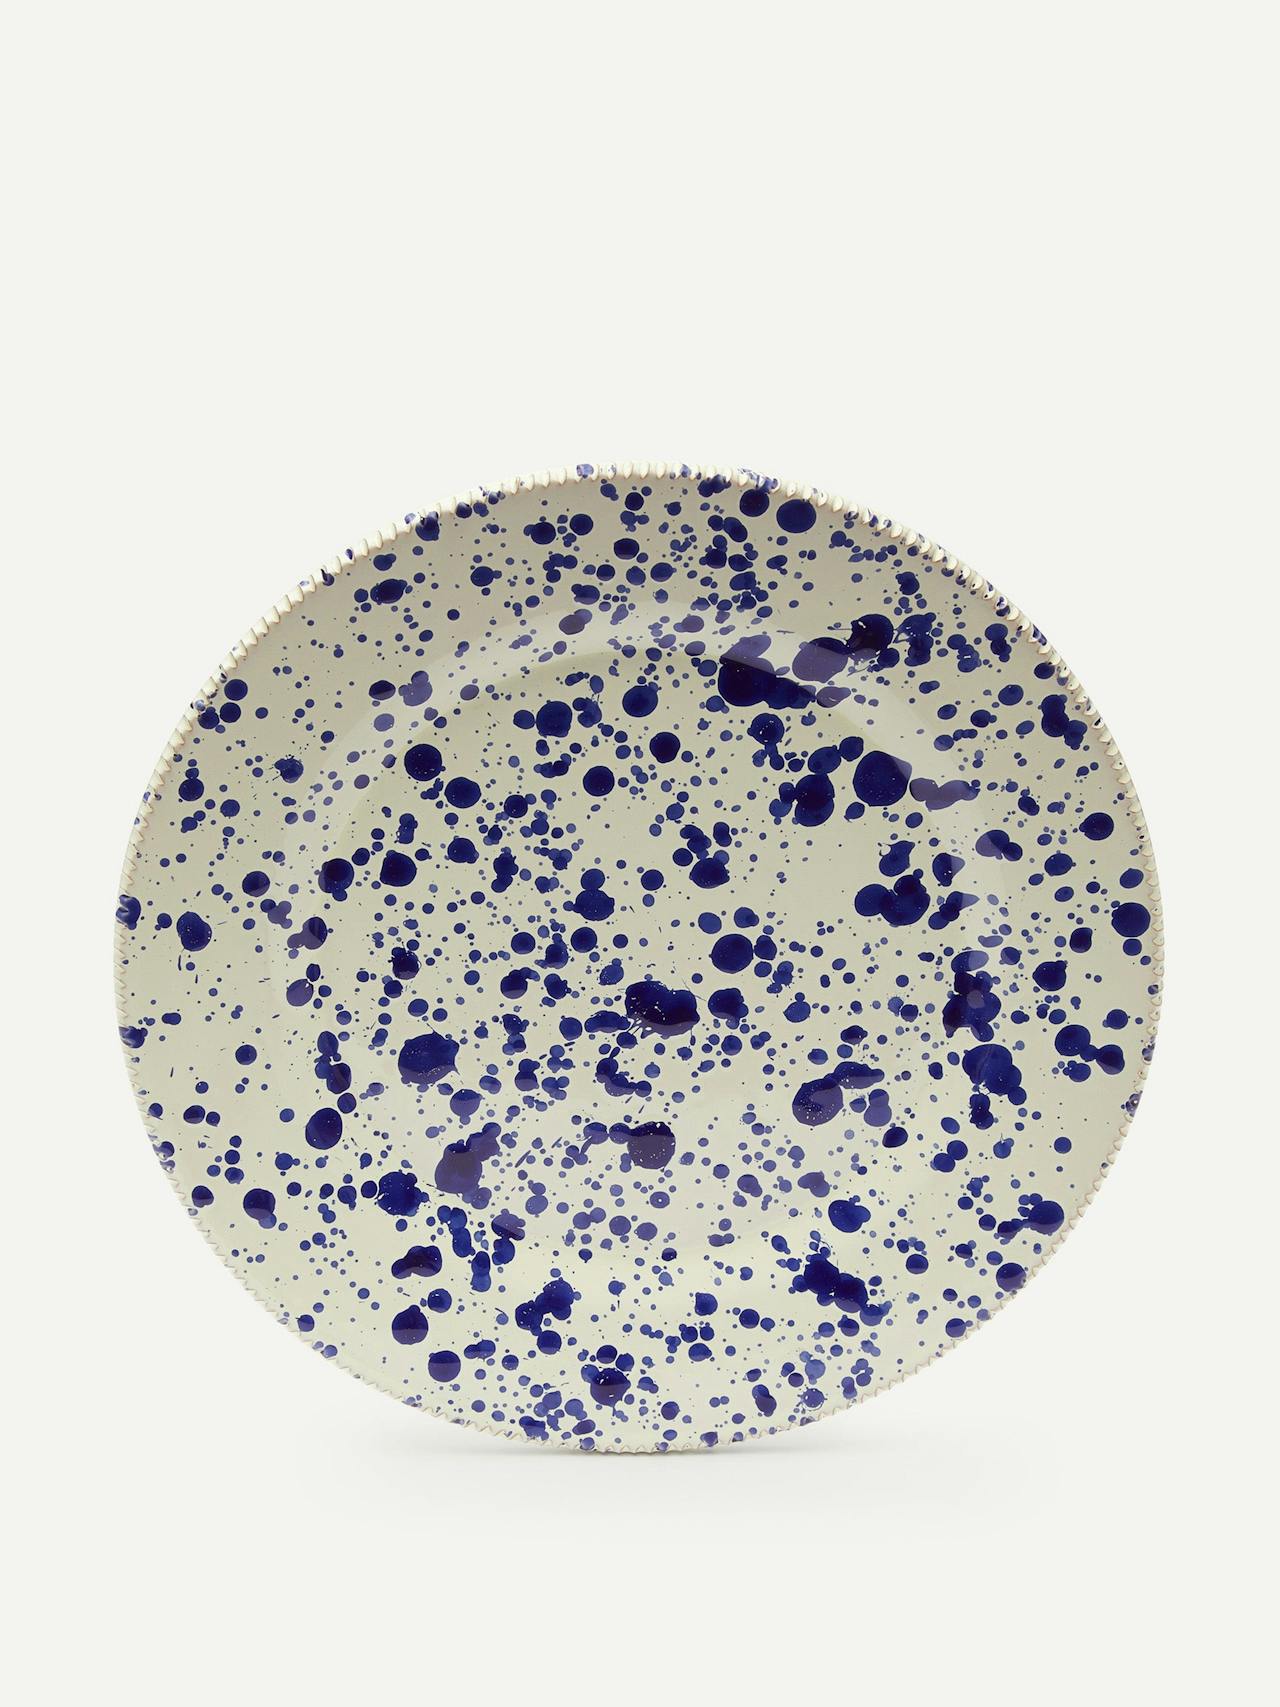 Dinner plate in blueberry